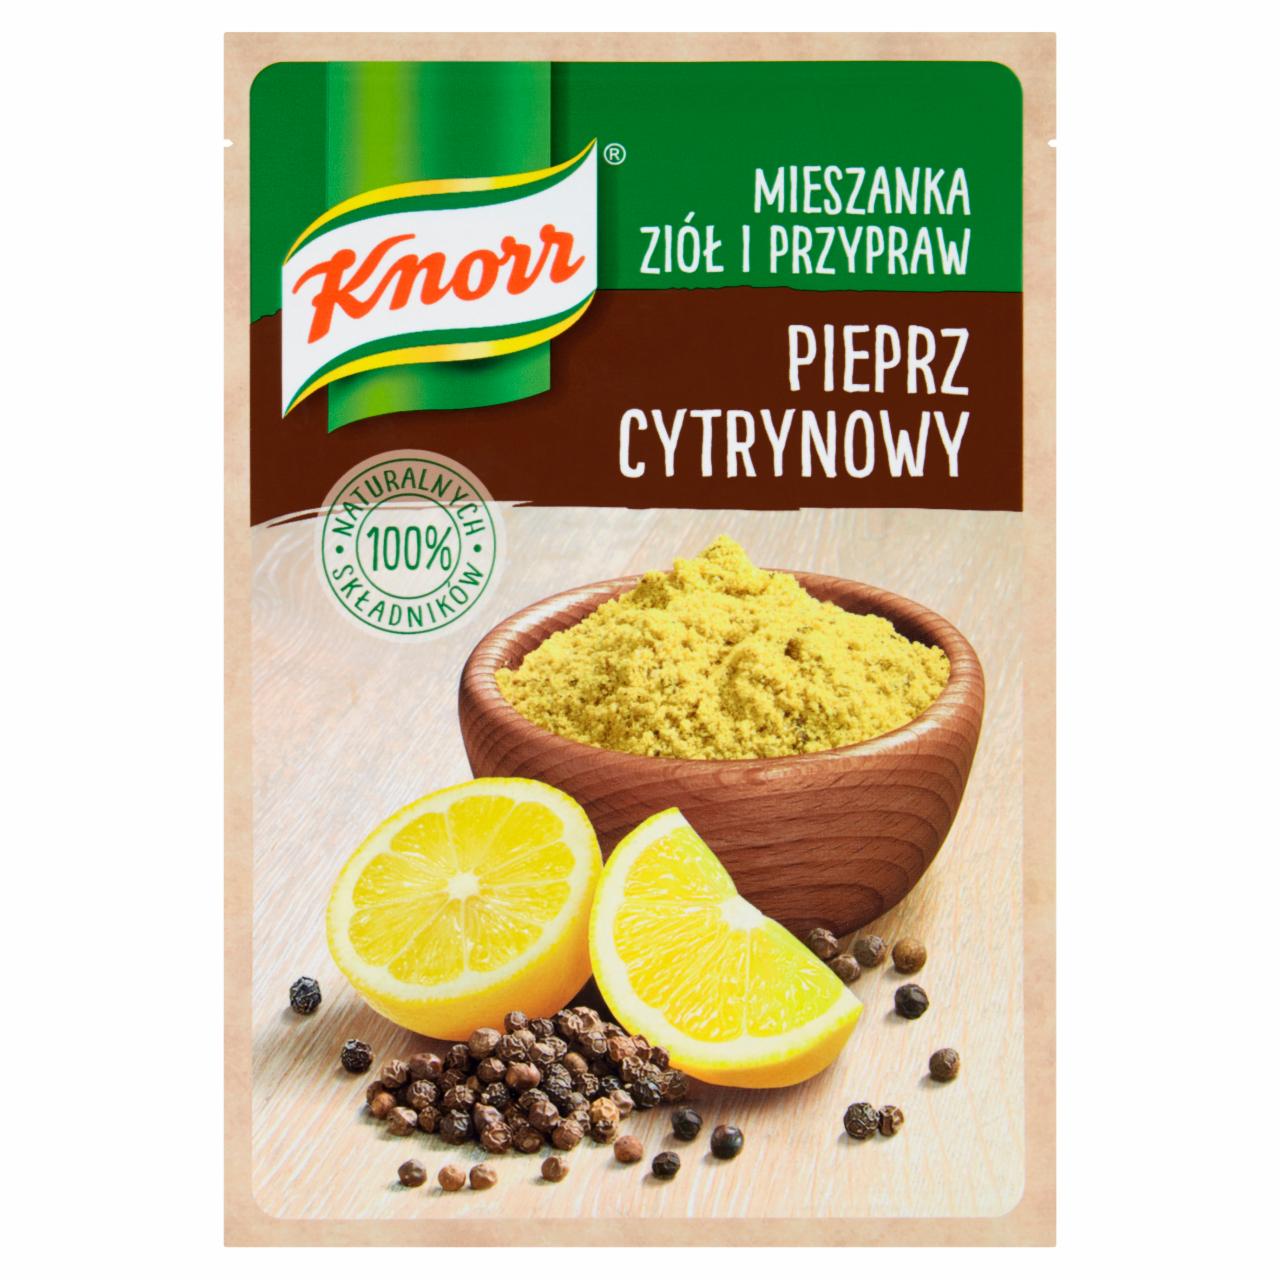 Zdjęcia - Knorr Mieszanka ziół i przypraw pieprz cytrynowy 15 g